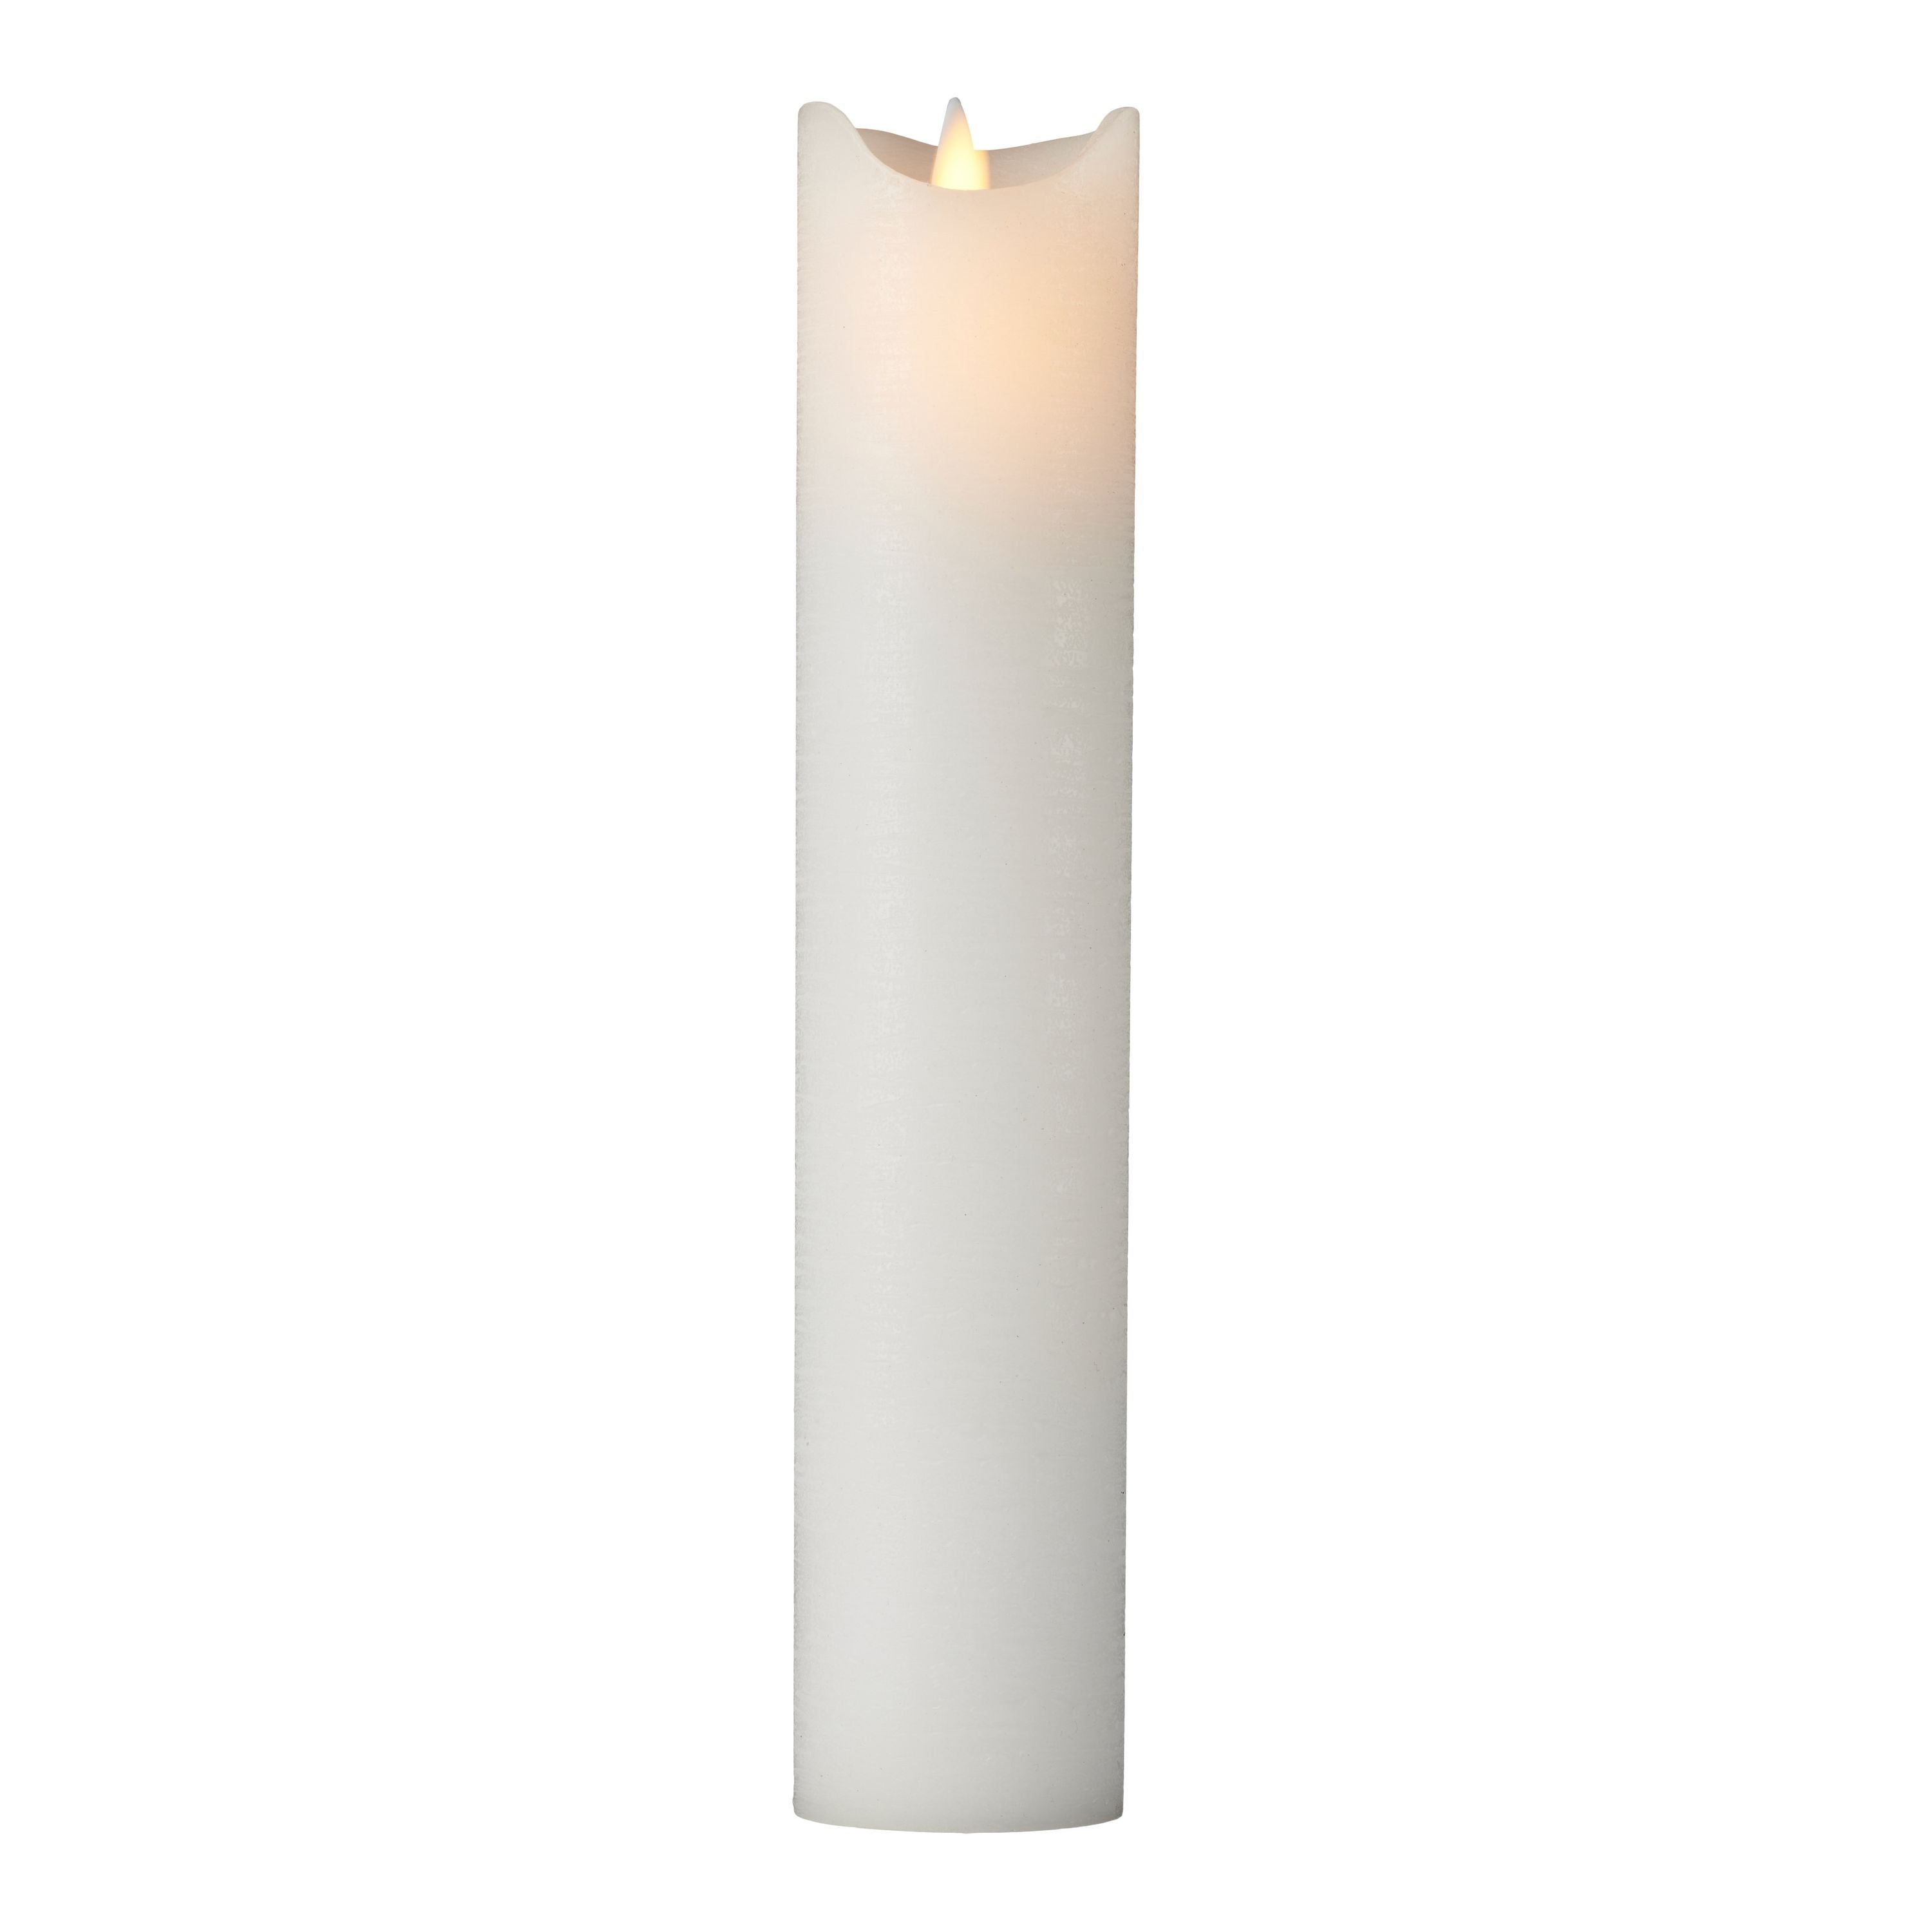 Sirius Sara wiederaufladbare LED -Kerzen weiß, Ø5X H25CM